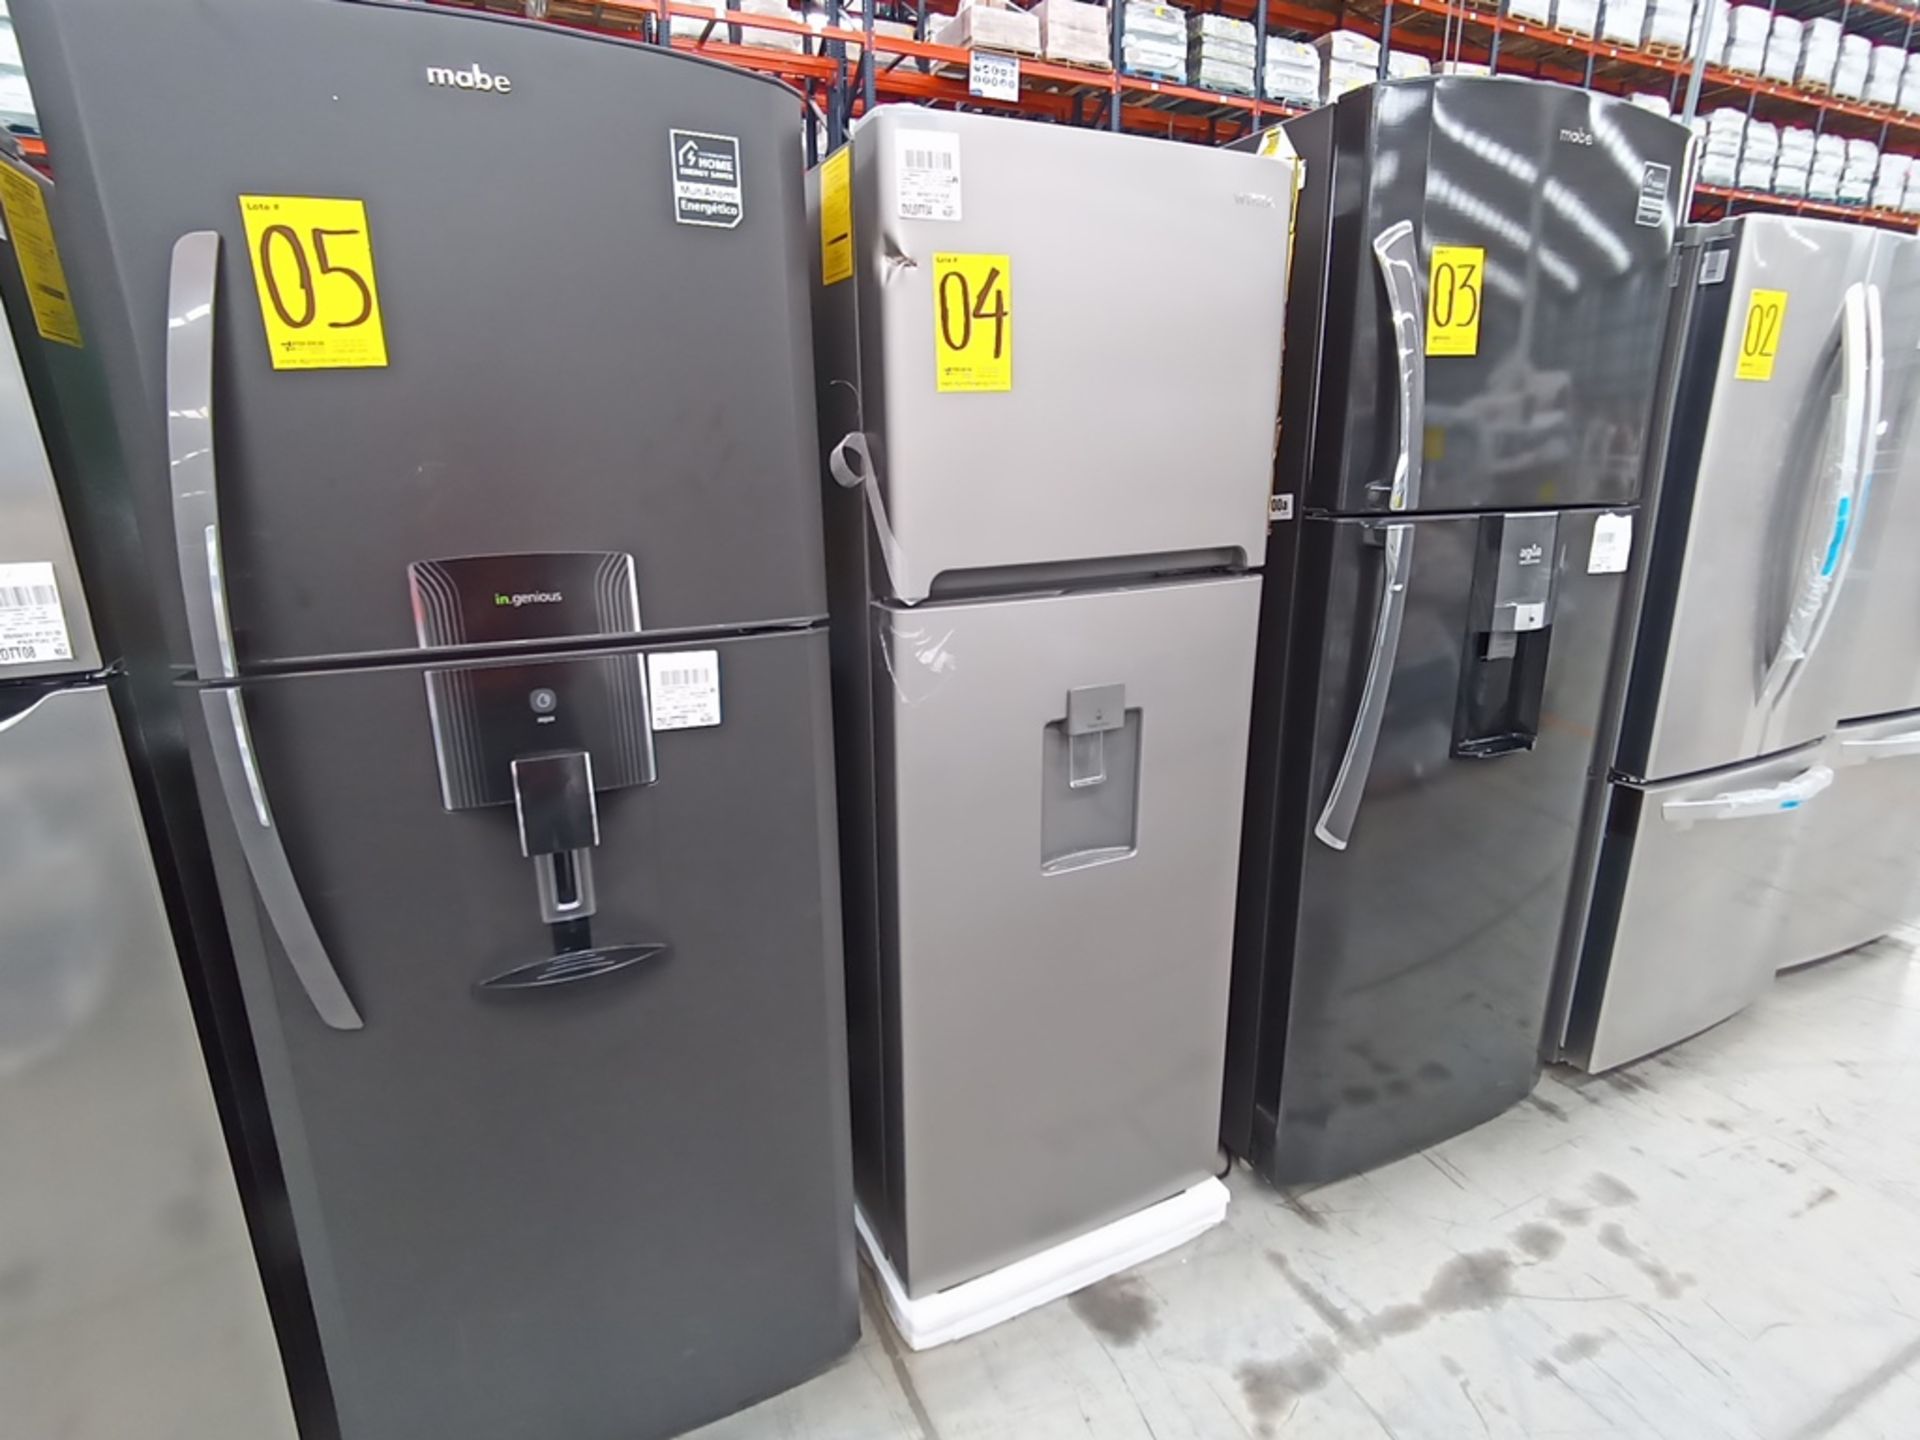 1 Refrigerador con dispensador de agua, Marca Winia, Modelo DFR-32210GMX, Serie MR217N10140659, Col - Image 5 of 10